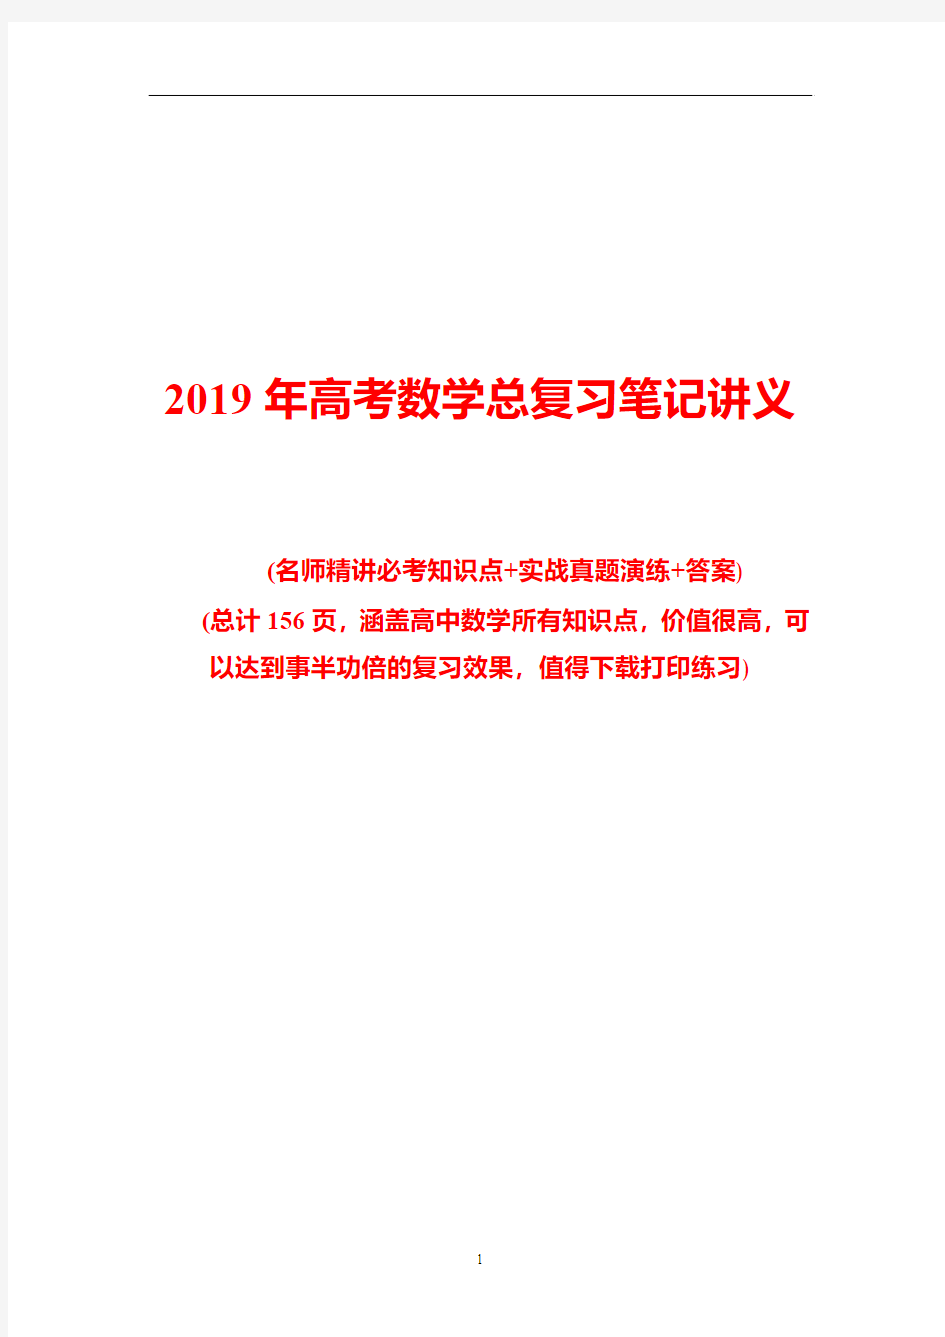 2019年高考数学总复习笔记讲义(完整版)